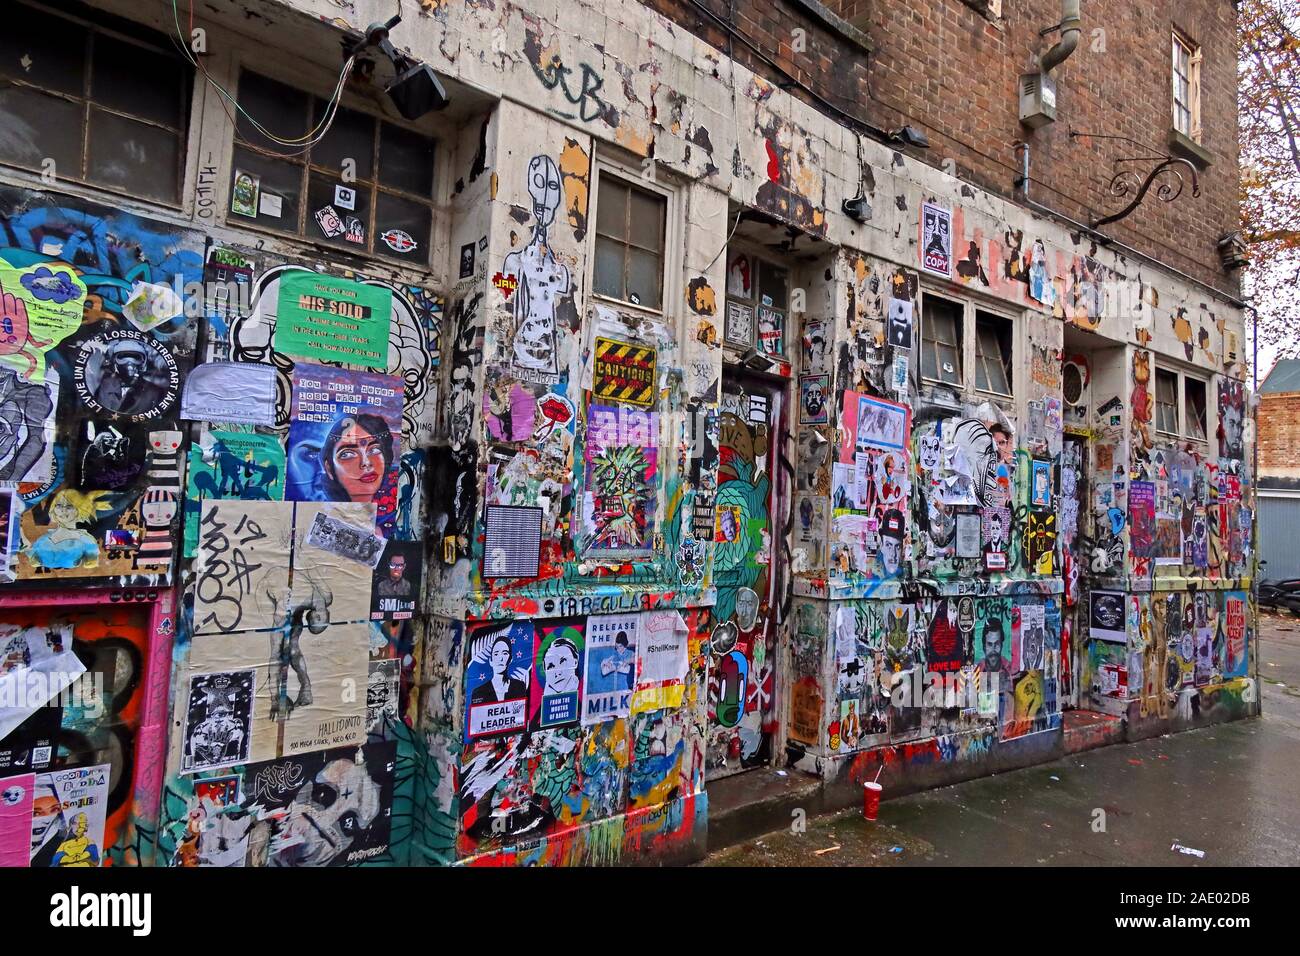 Graffiti et affiches, pochoir art, hors Brick Lane, East End, Londres, Angleterre, Royaume-Uni, E1 6SRil Banque D'Images